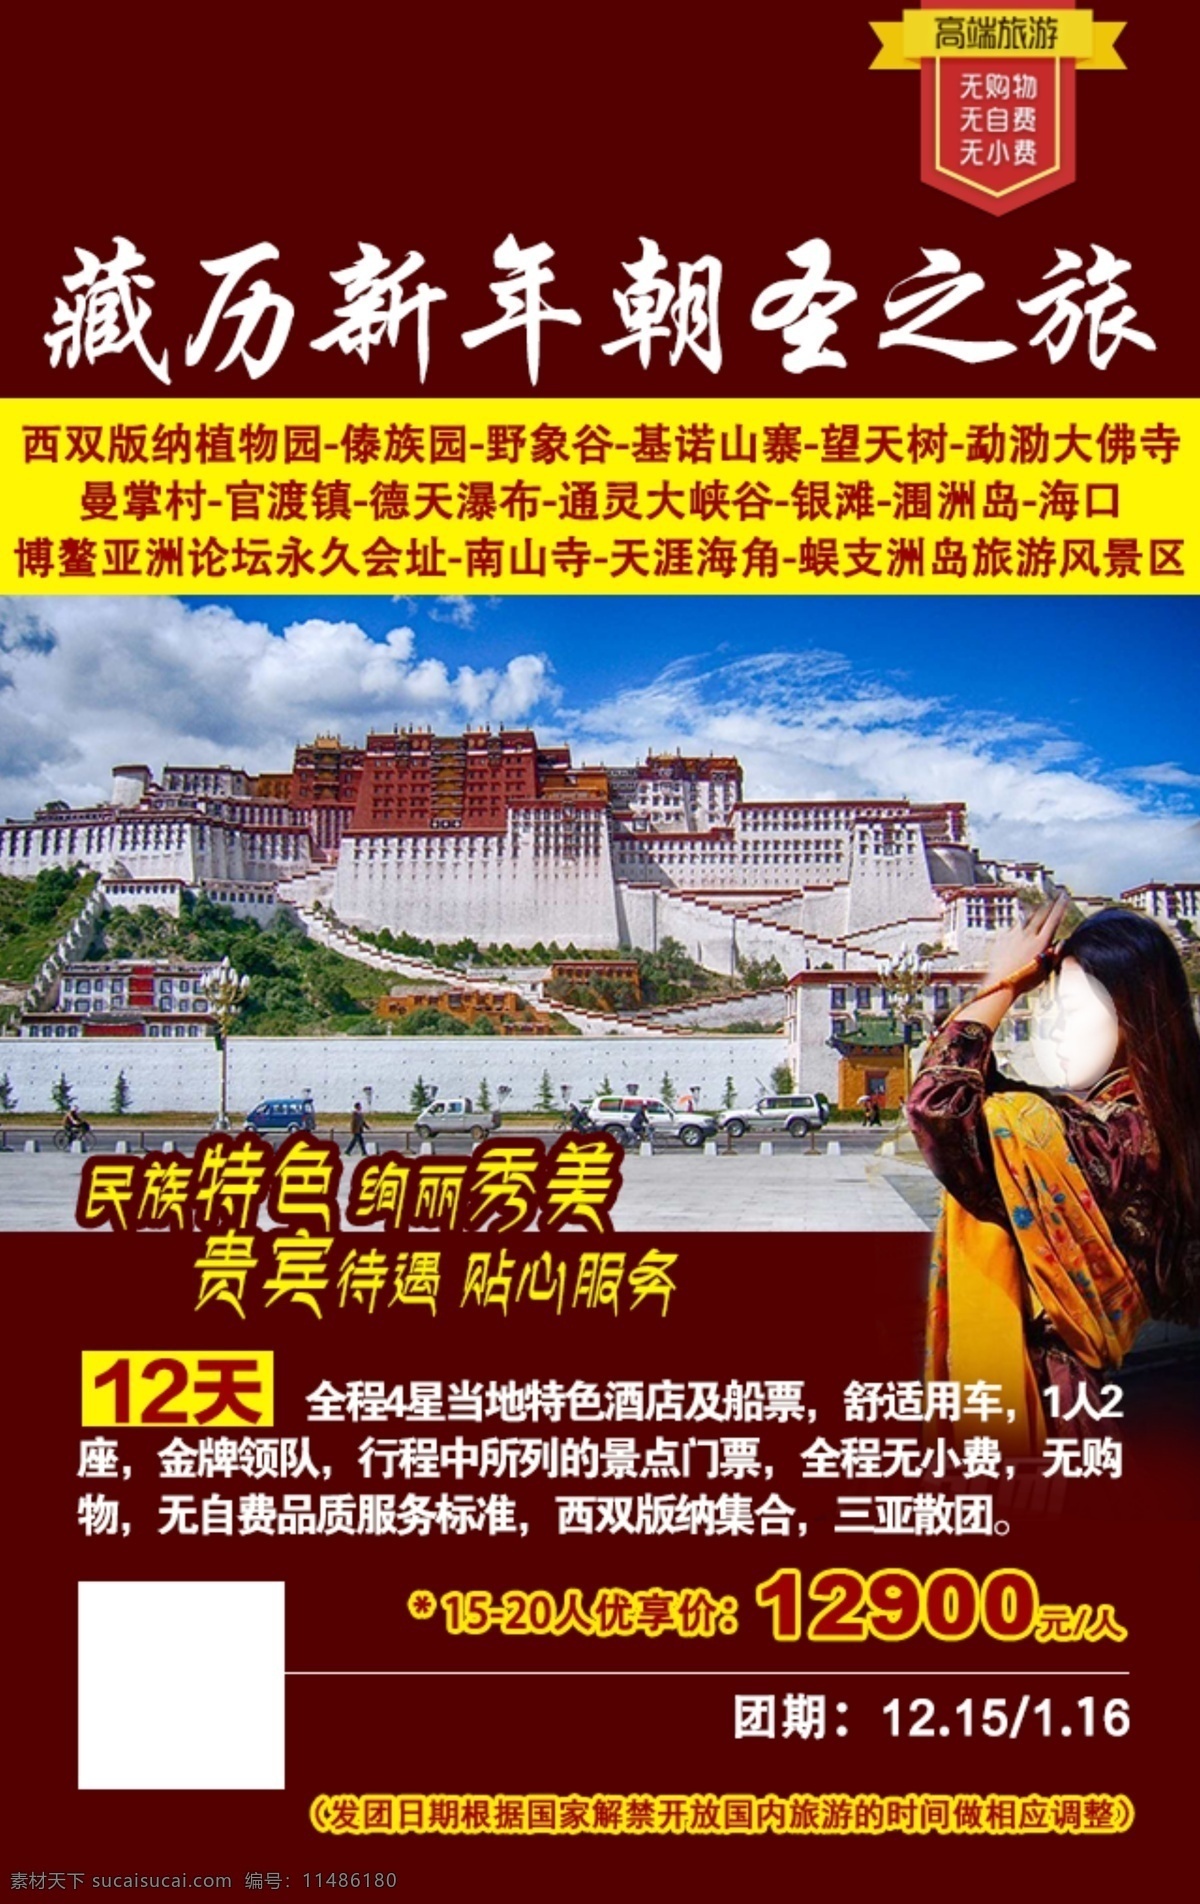 藏历 新年 朝圣 之旅 西藏旅游图片 旅游 分层